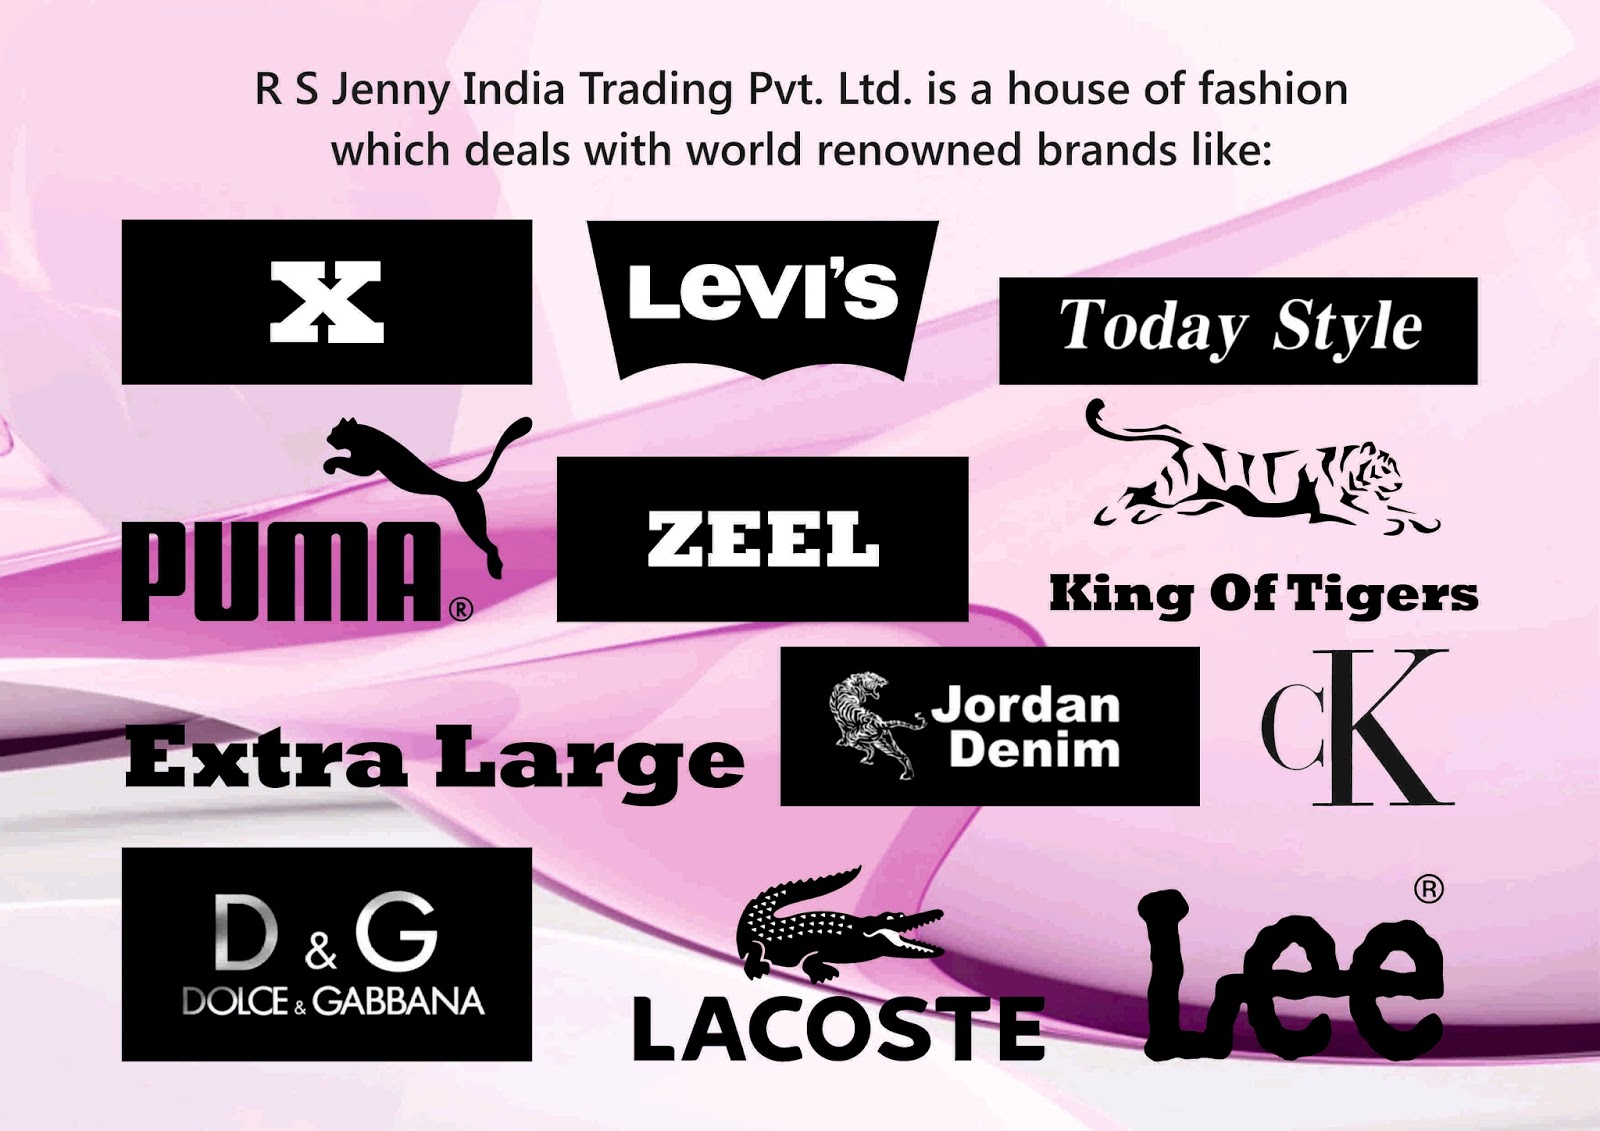 Zeel International Brand for women's Clothing